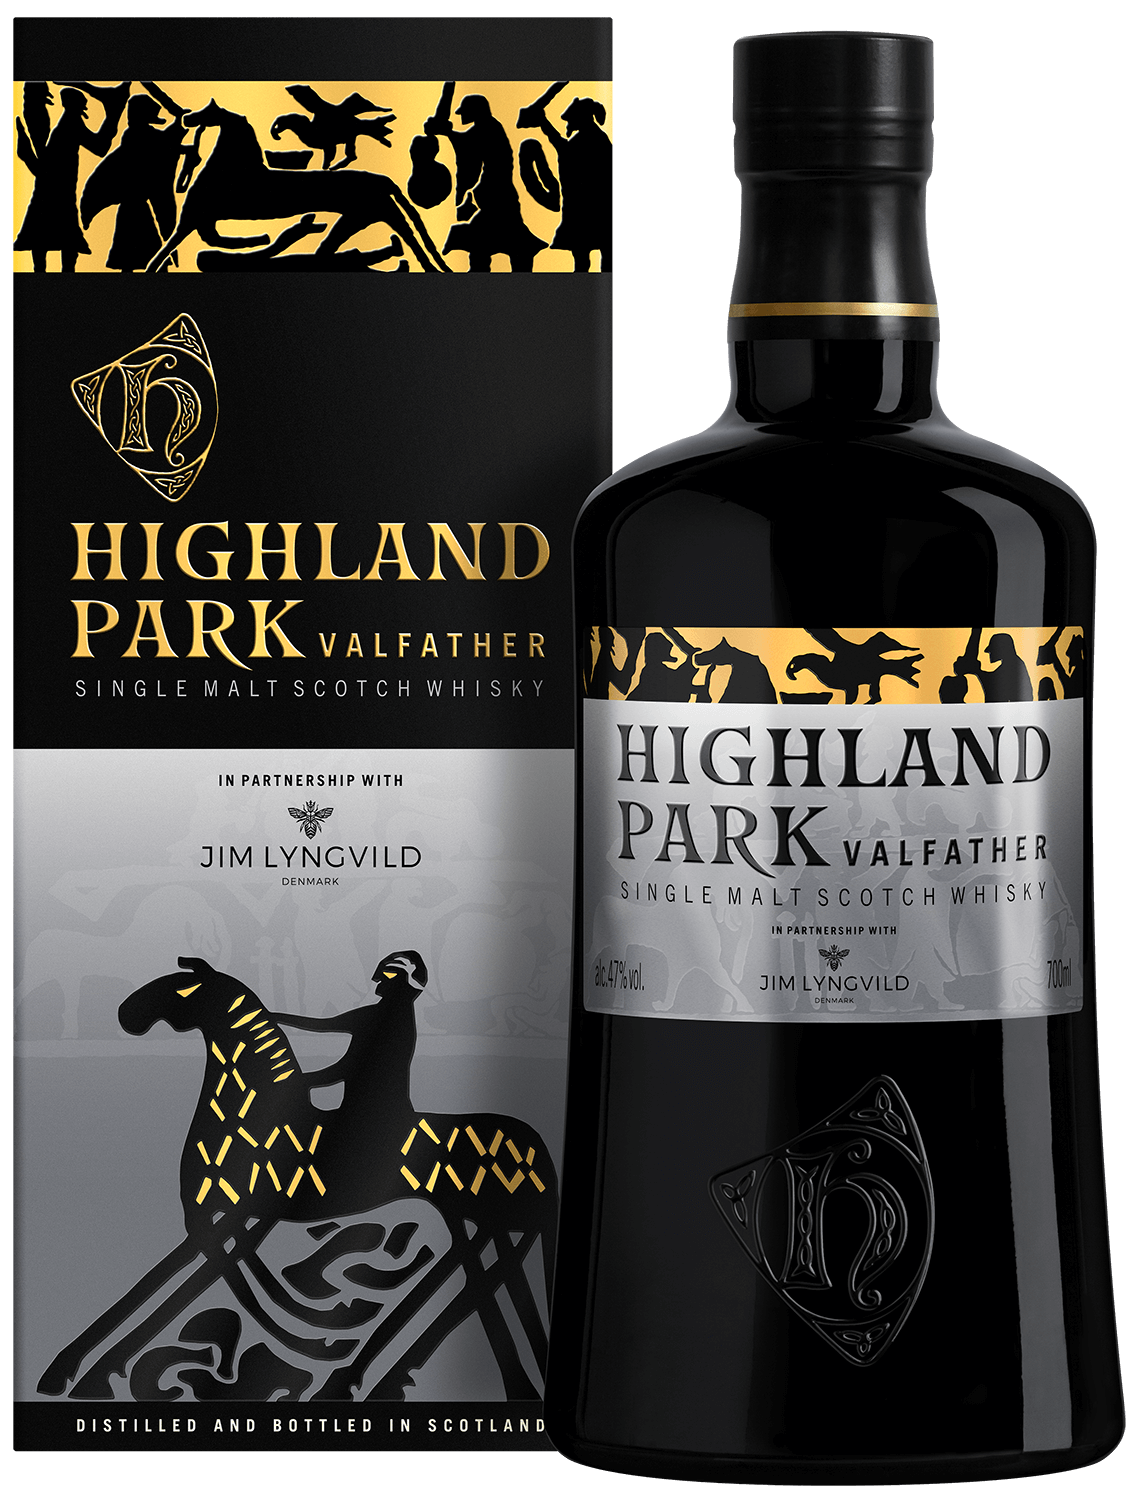 Highland Park Valfather single malt scotch whisky